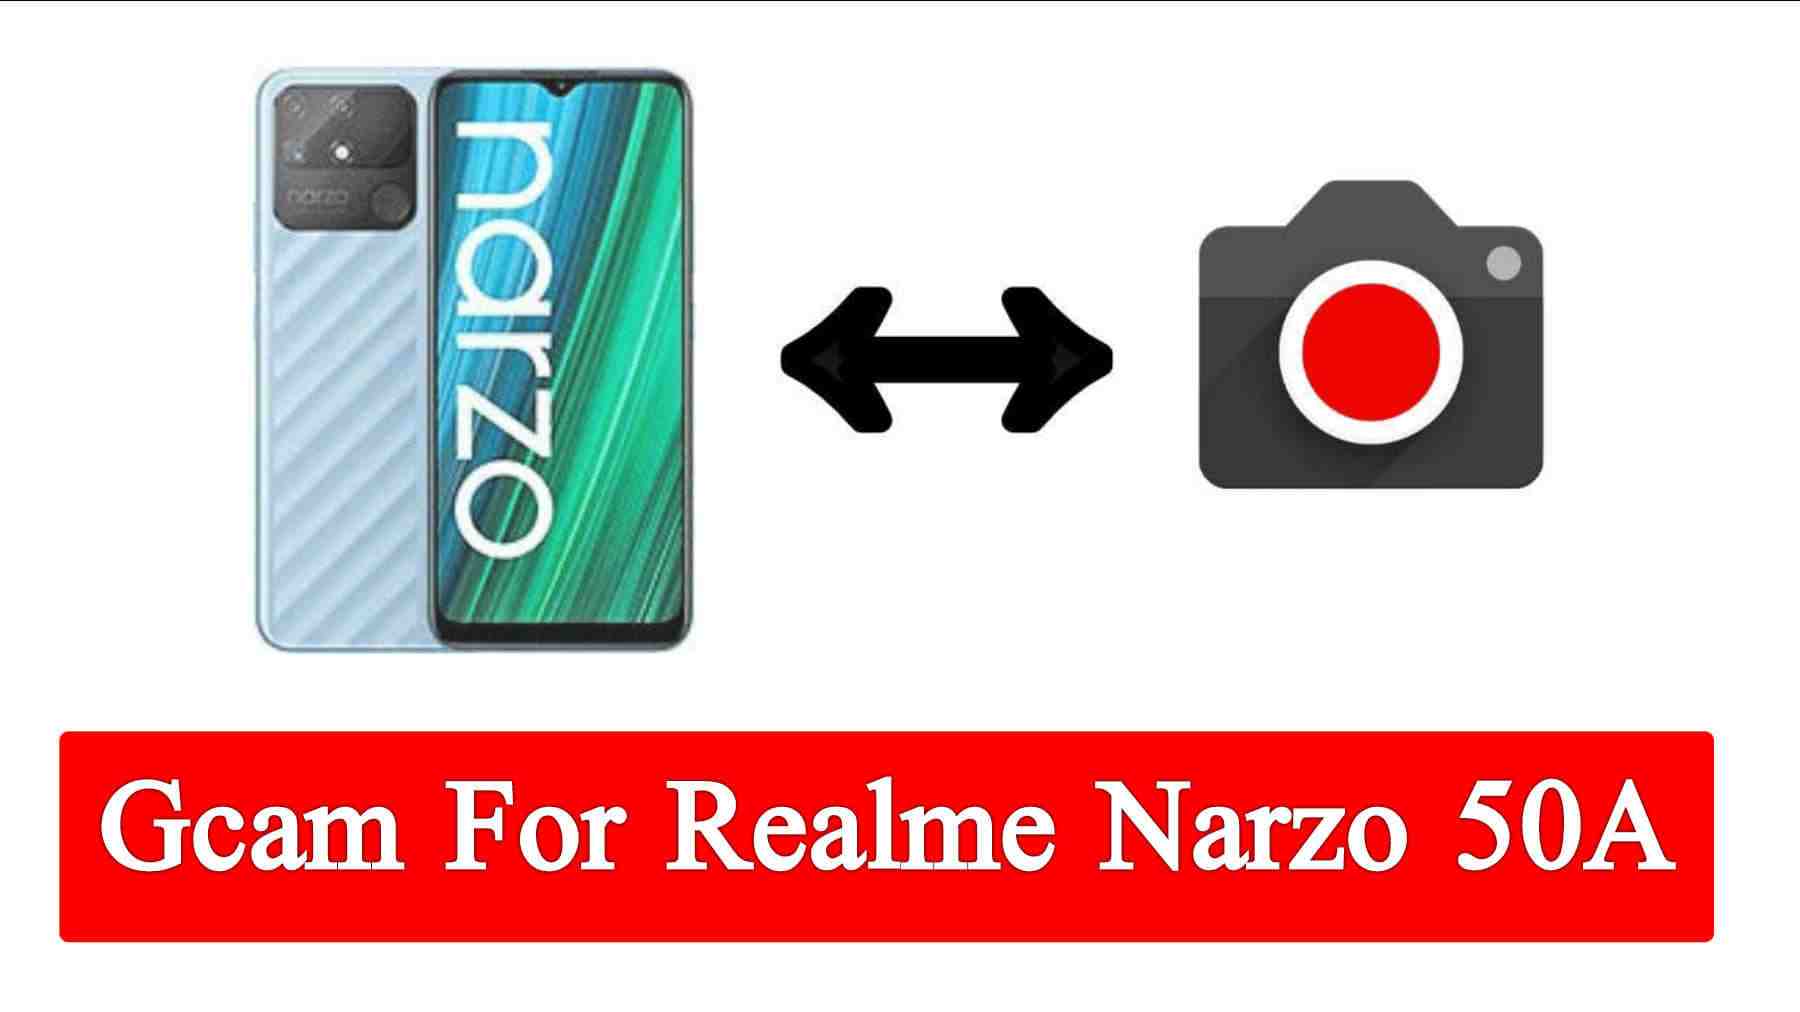 GCam for Realme Narzo 50A